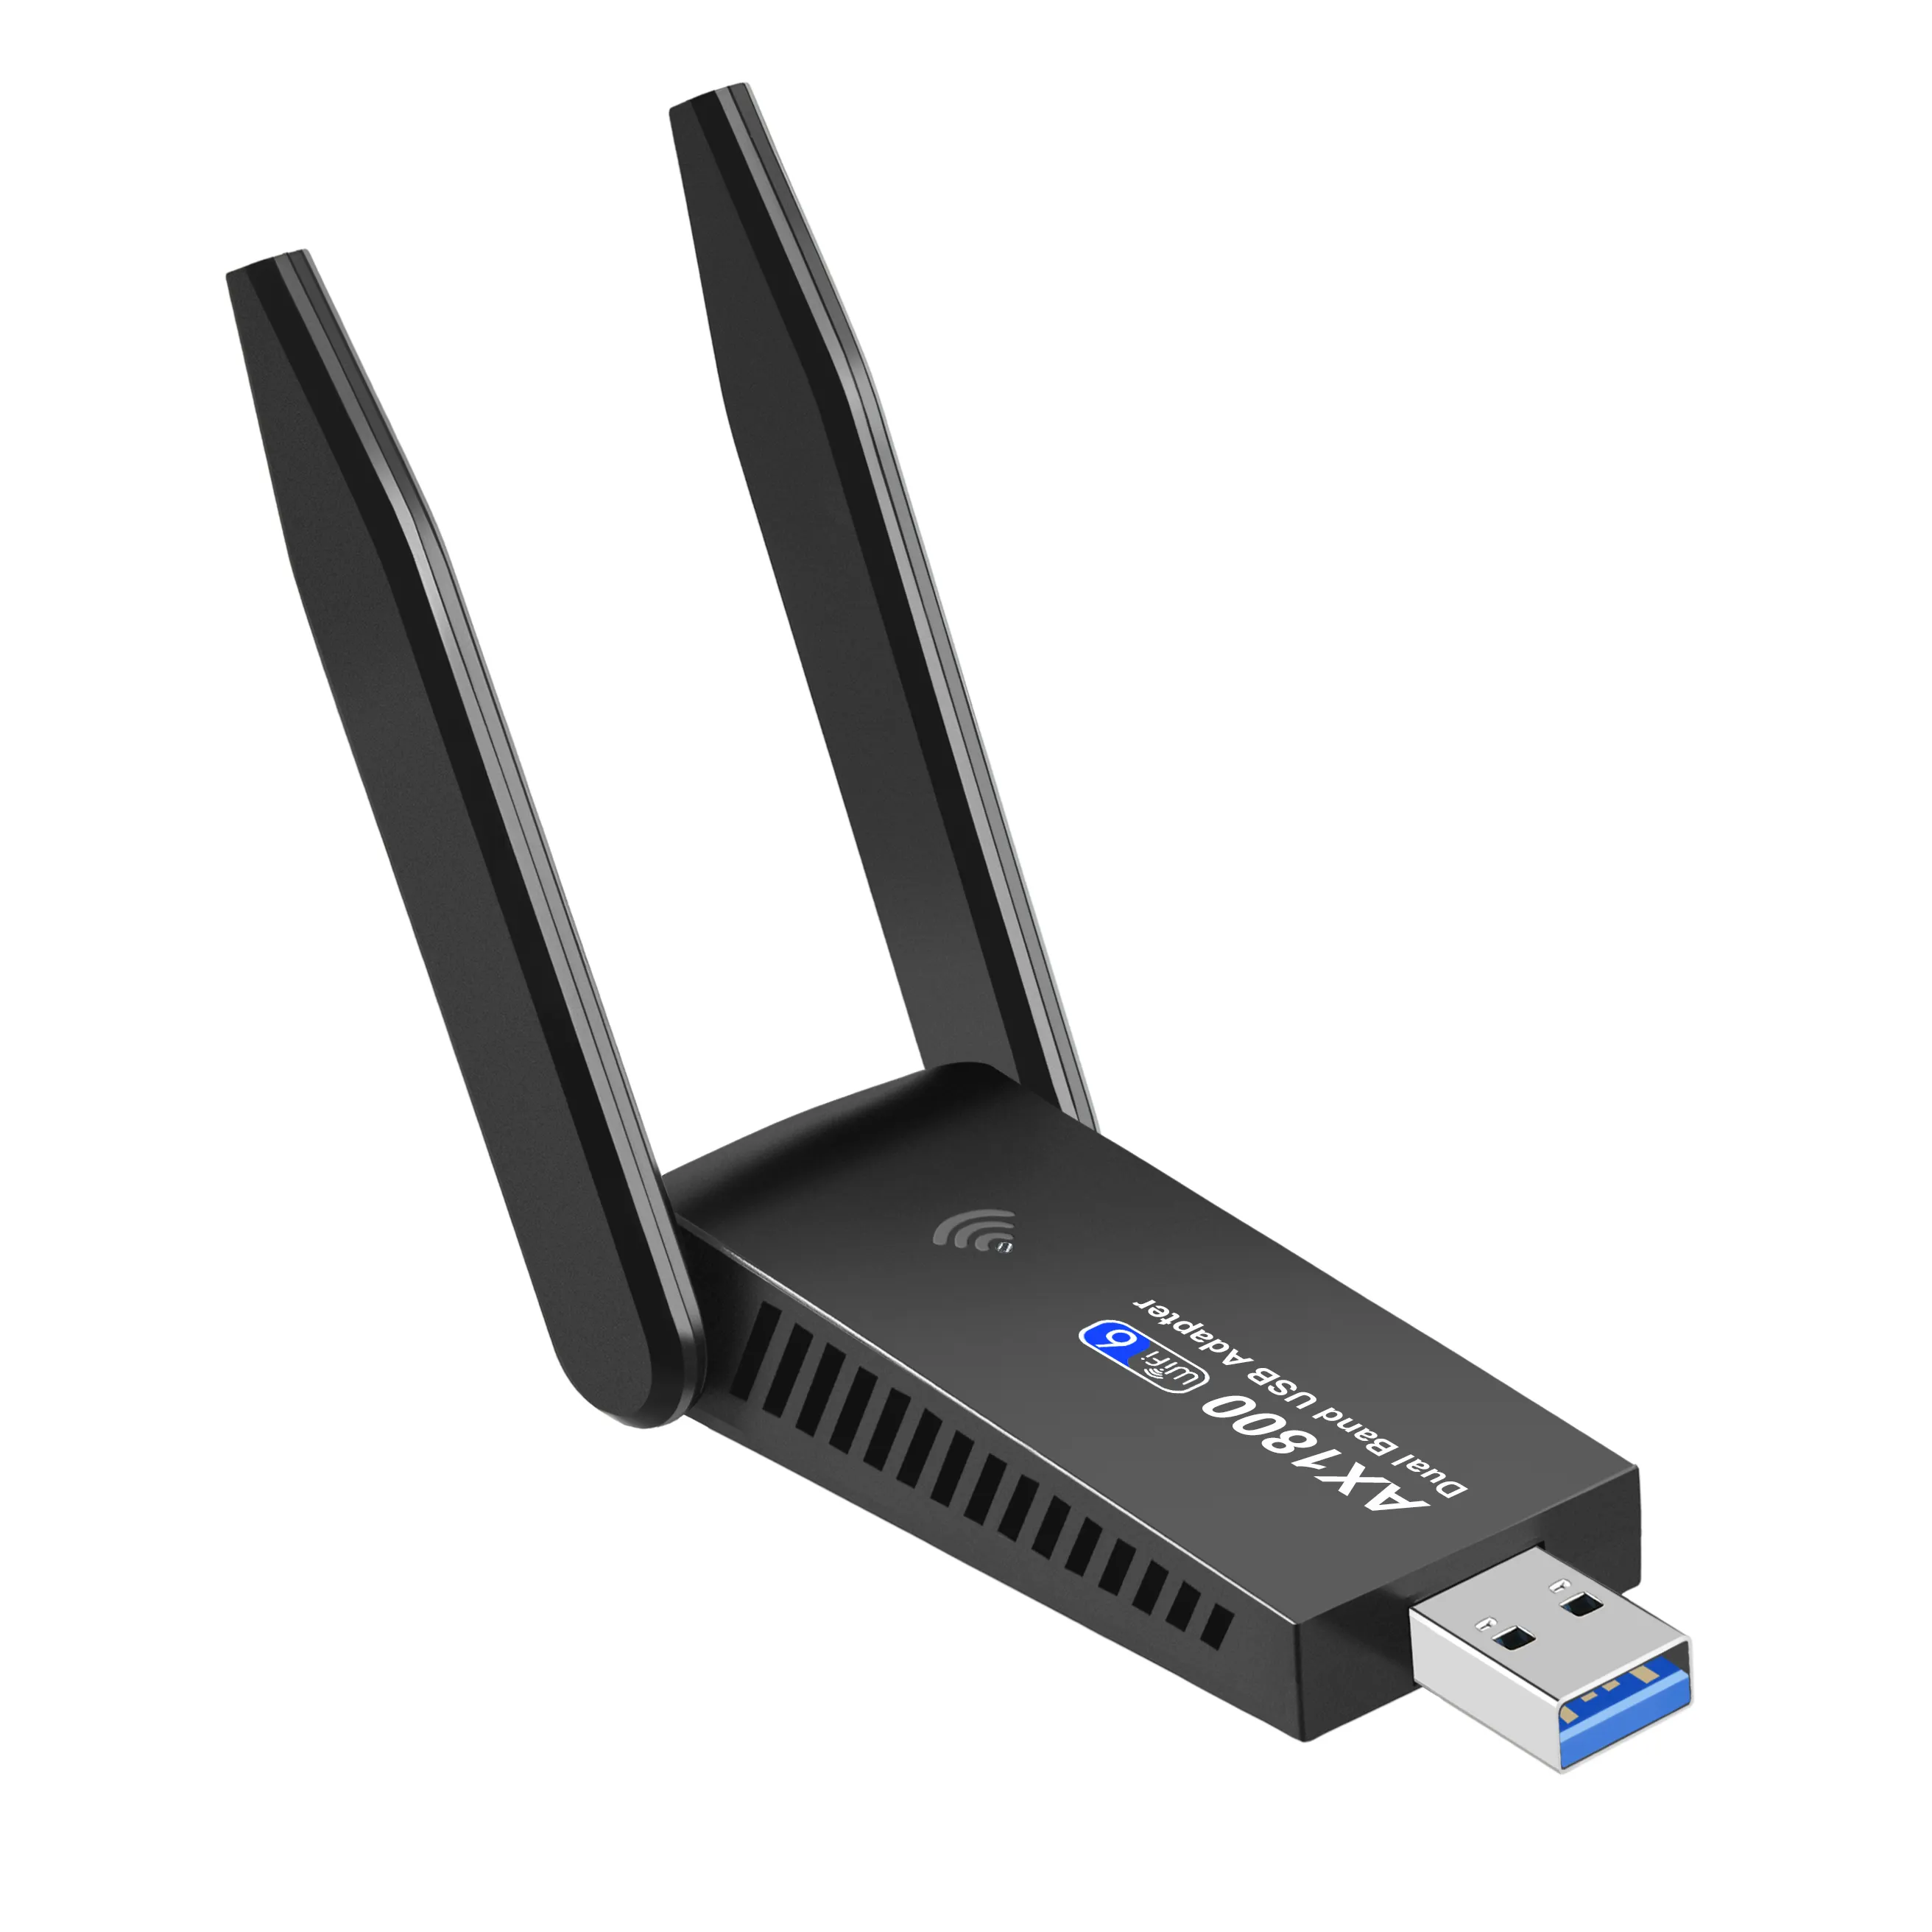 การ์ดเครือข่าย Wi-Fi ไร้สาย1800G/3.0 GHz สำหรับ Windows 7/AX1803 2.4 Mbps WiFi 6 USB 5.8การ์ดเครือข่ายอะแดปเตอร์เครือข่าย Dual Band 10/11